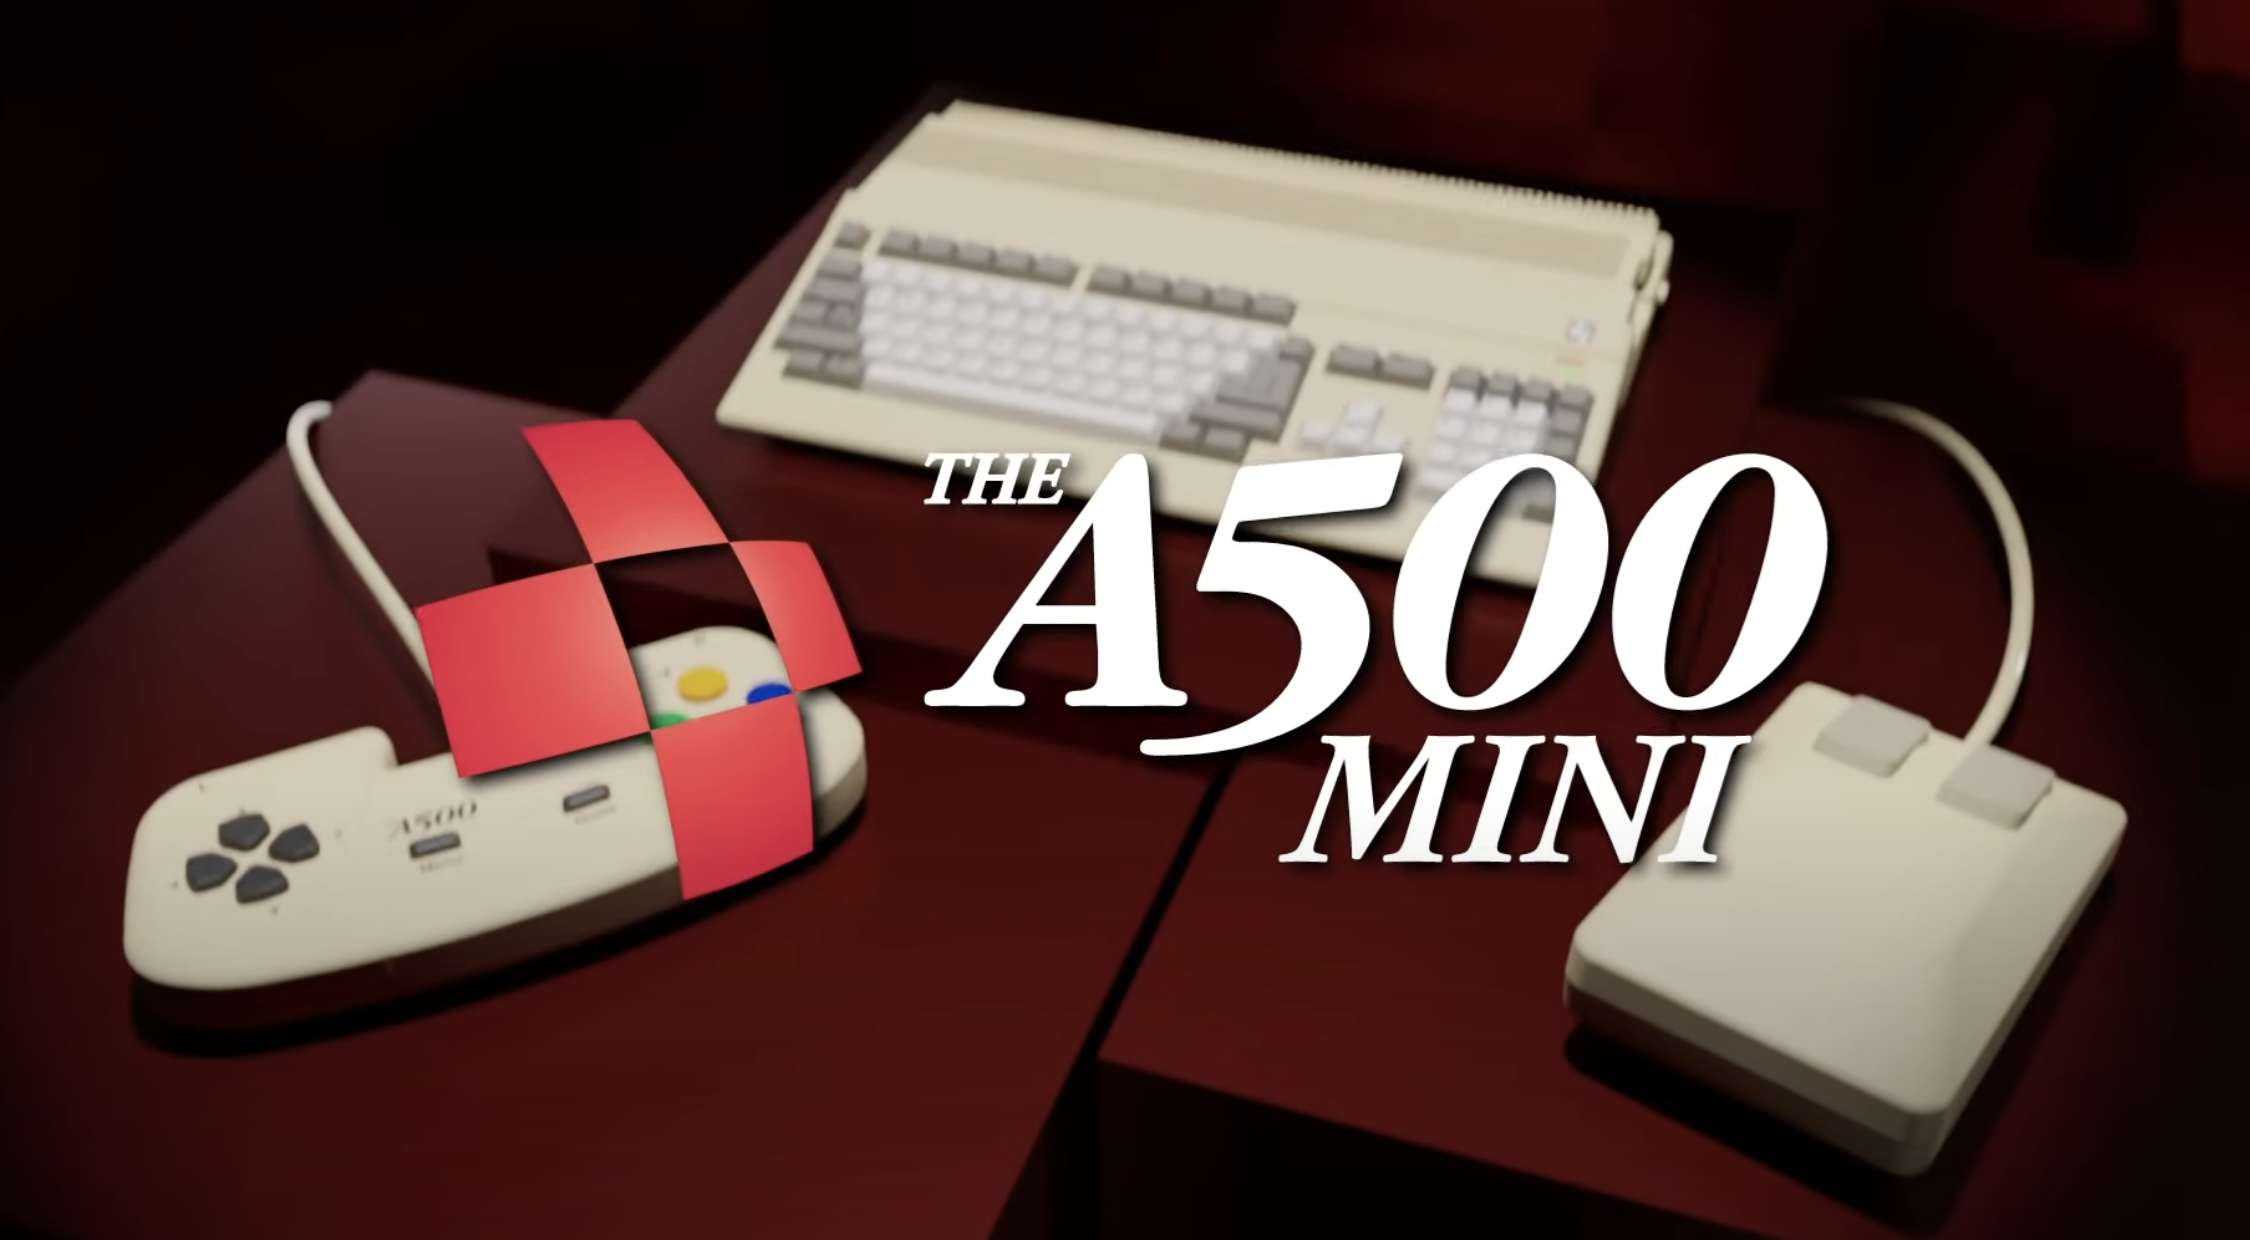 THEA500 Mini to wyjątkowa, ponadczasowa retro konsola dla prawdziwych maniaków klasyków! Co potrafi? Już można zamawiać w sklepach – jaka cena?